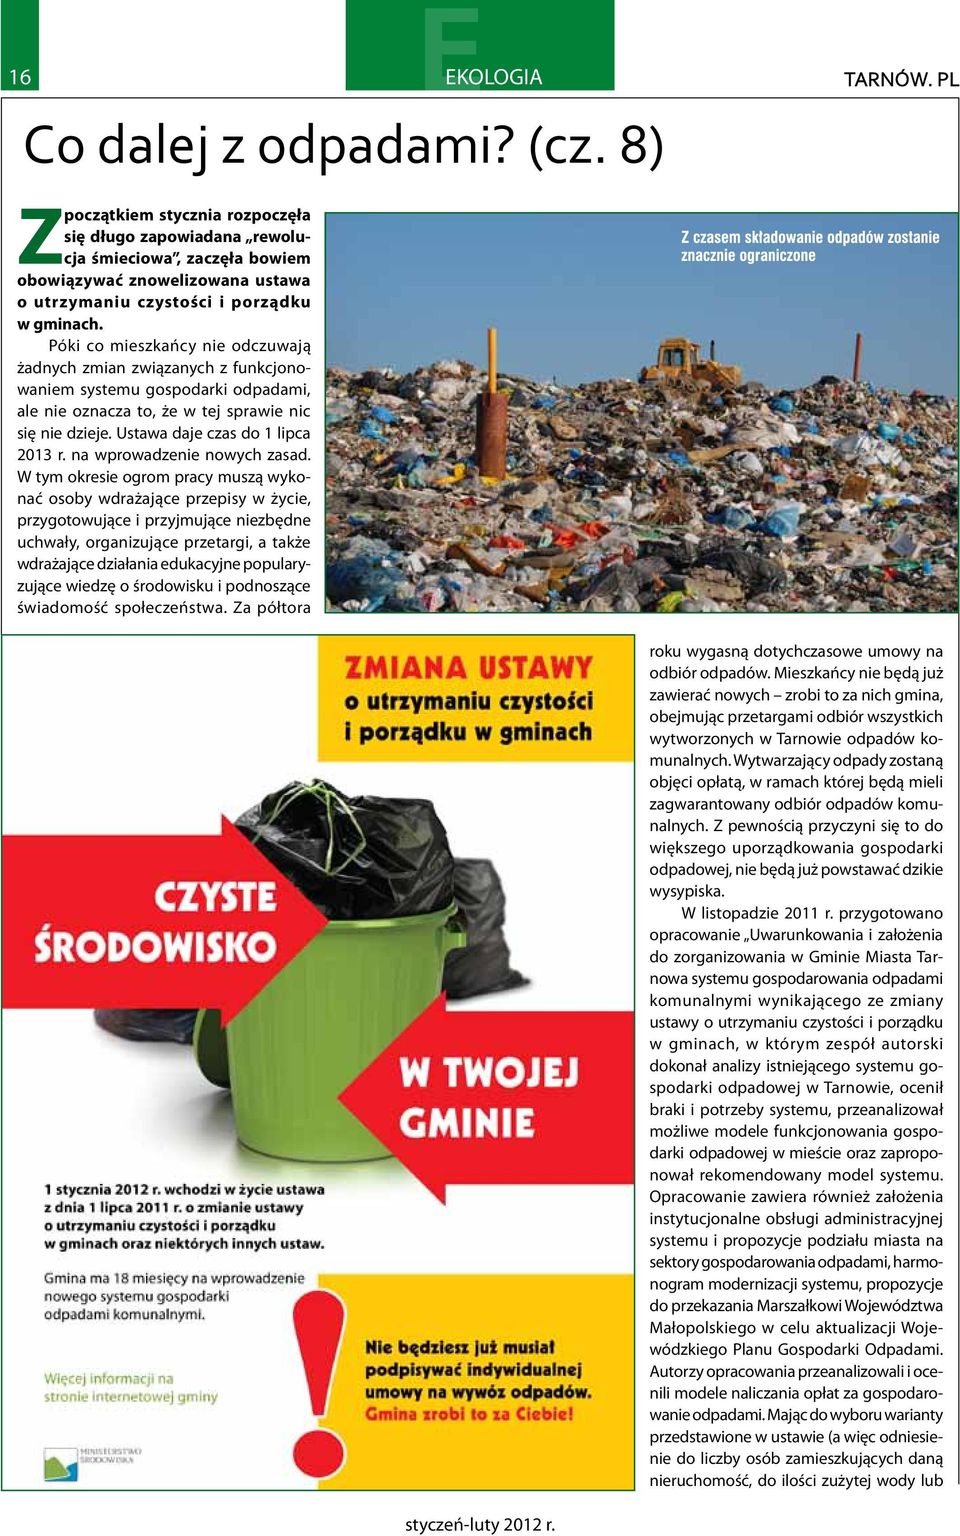 Póki co mieszkańcy nie odczuwają żadnych zmian związanych z funkcjonowaniem systemu gospodarki odpadami, ale nie oznacza to, że w tej sprawie nic się nie dzieje. Ustawa daje czas do 1 lipca 2013 r.